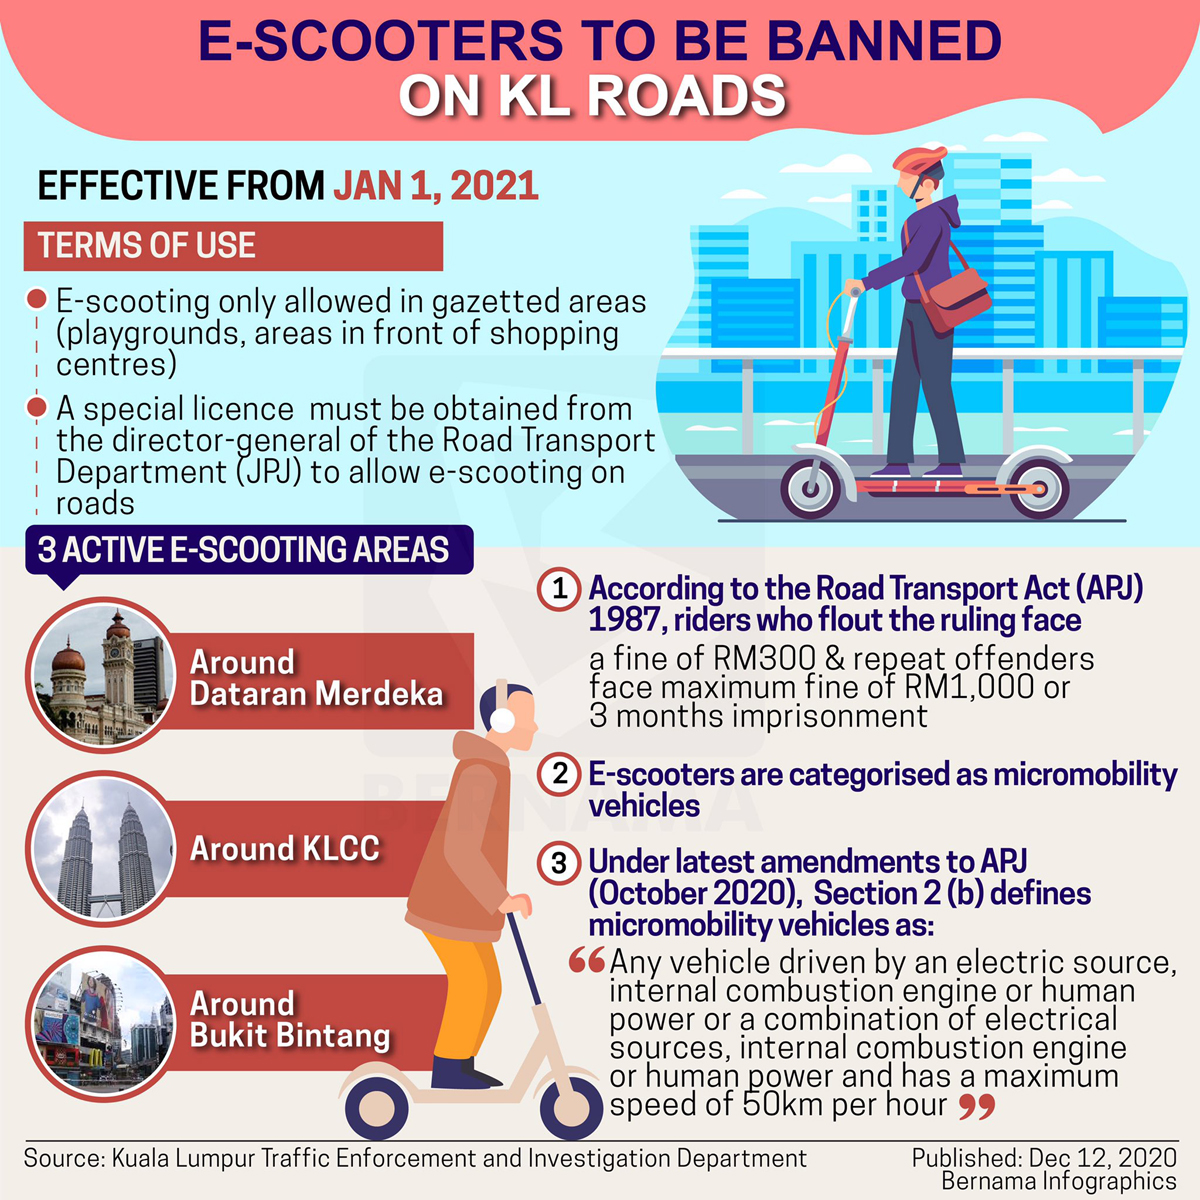 Los scooters eléctricos se prohibirán en las carreteras de Kuala Lumpur el 1 de enero de 2021